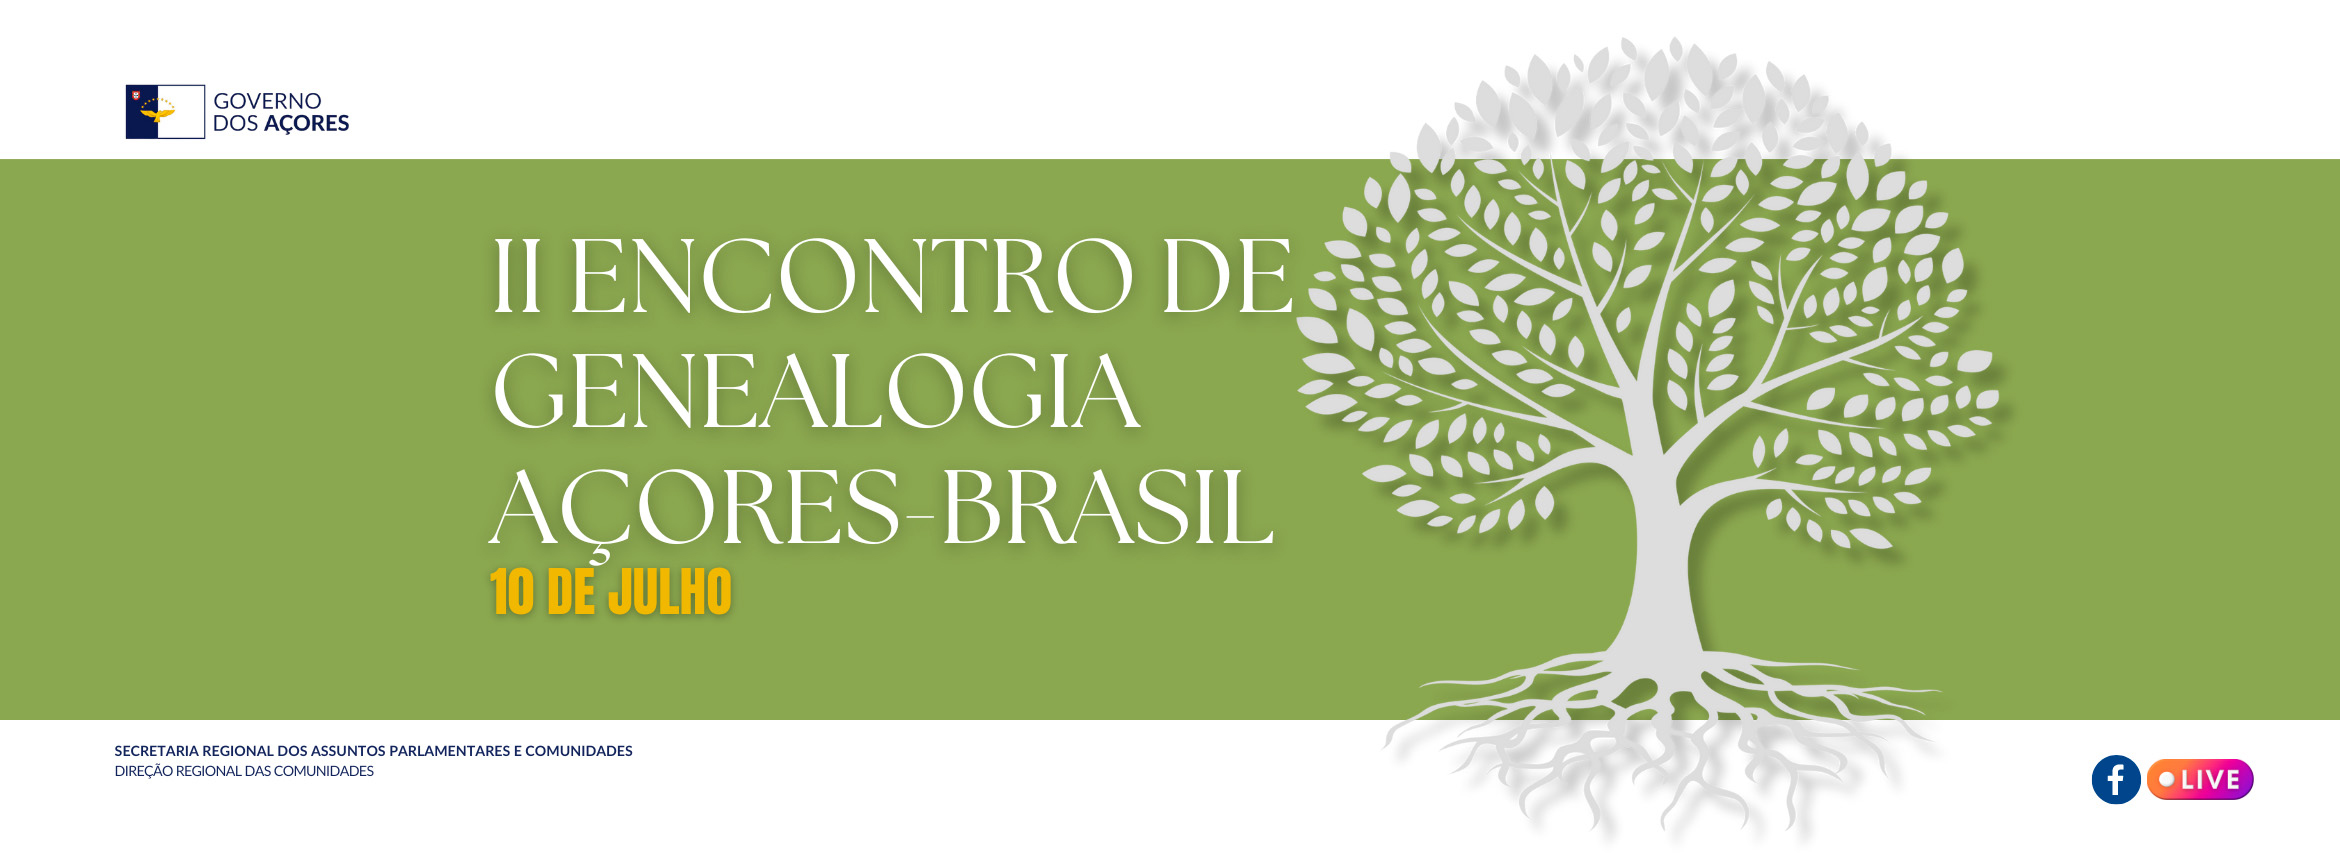 Governo dos Açores promove II Encontro de Genealogia Açores-Brasil